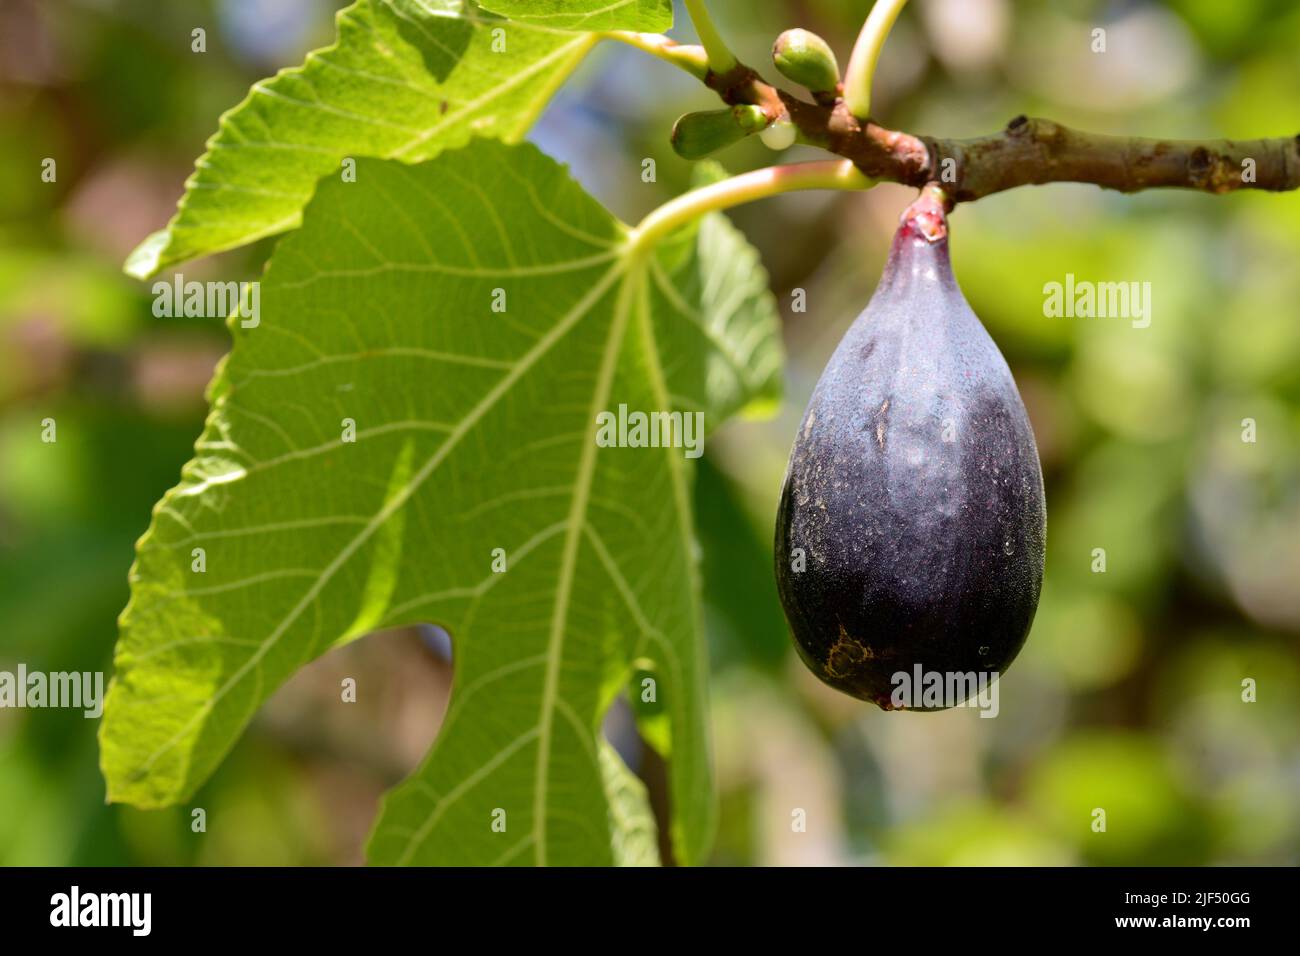 Detalle de los frutos de la higuera, ficus carica, en su árbol en verano Stock Photo